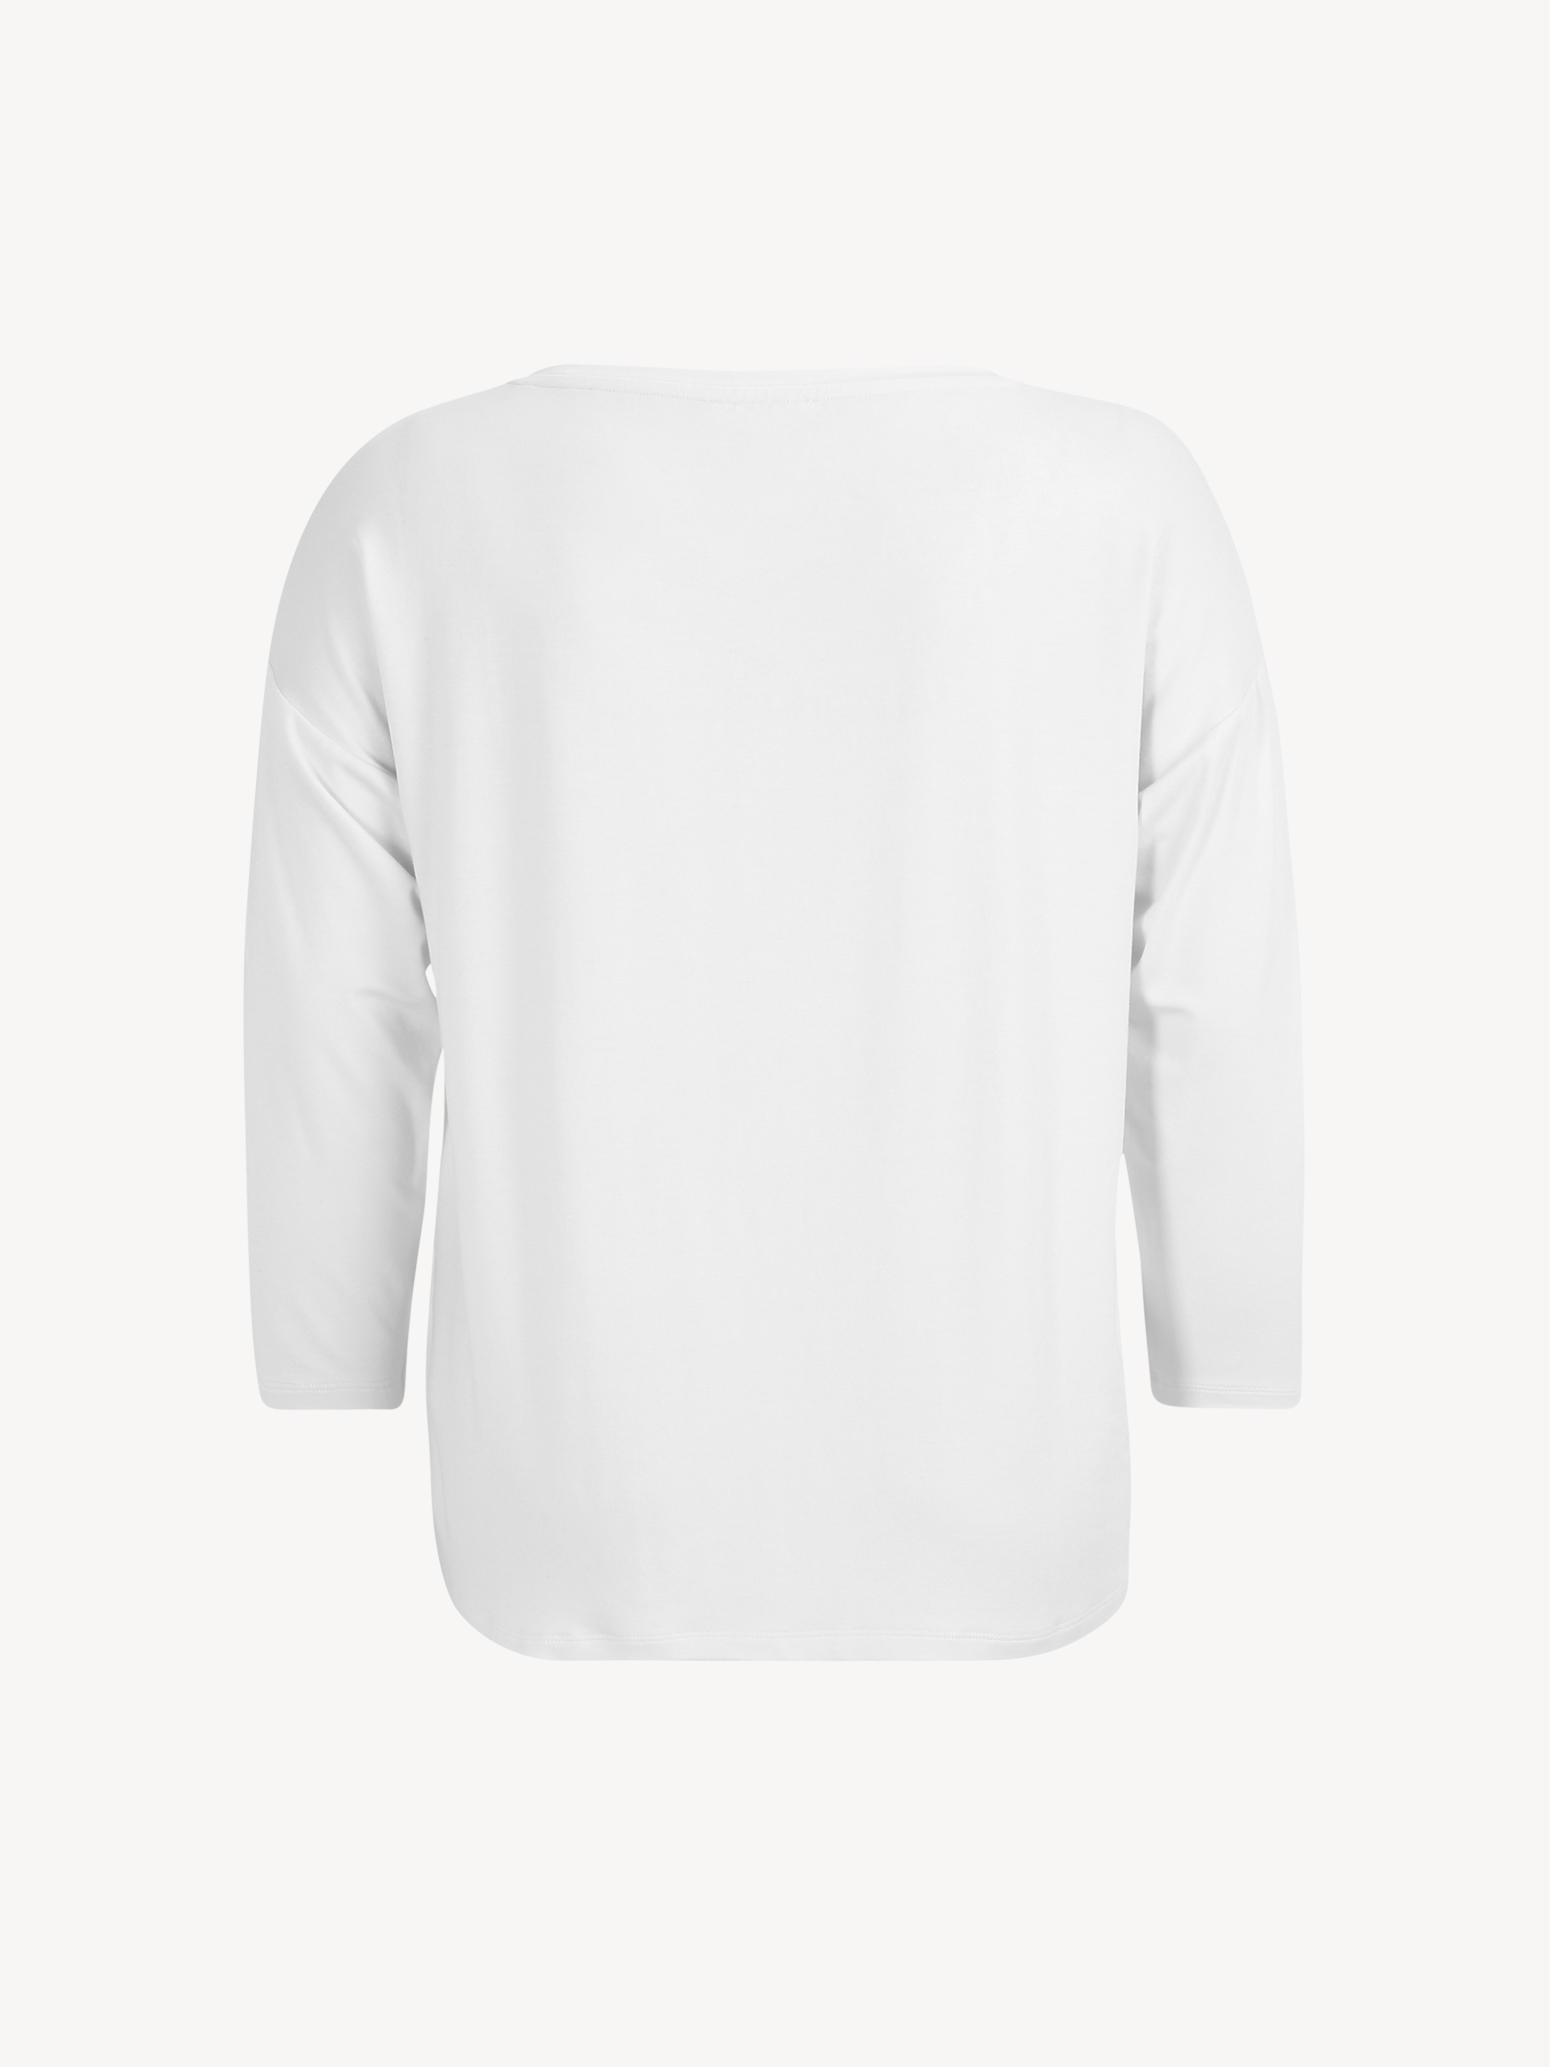 Langarmshirt - weiß TAW0372-10001: Tops online Shirts & kaufen! Tamaris